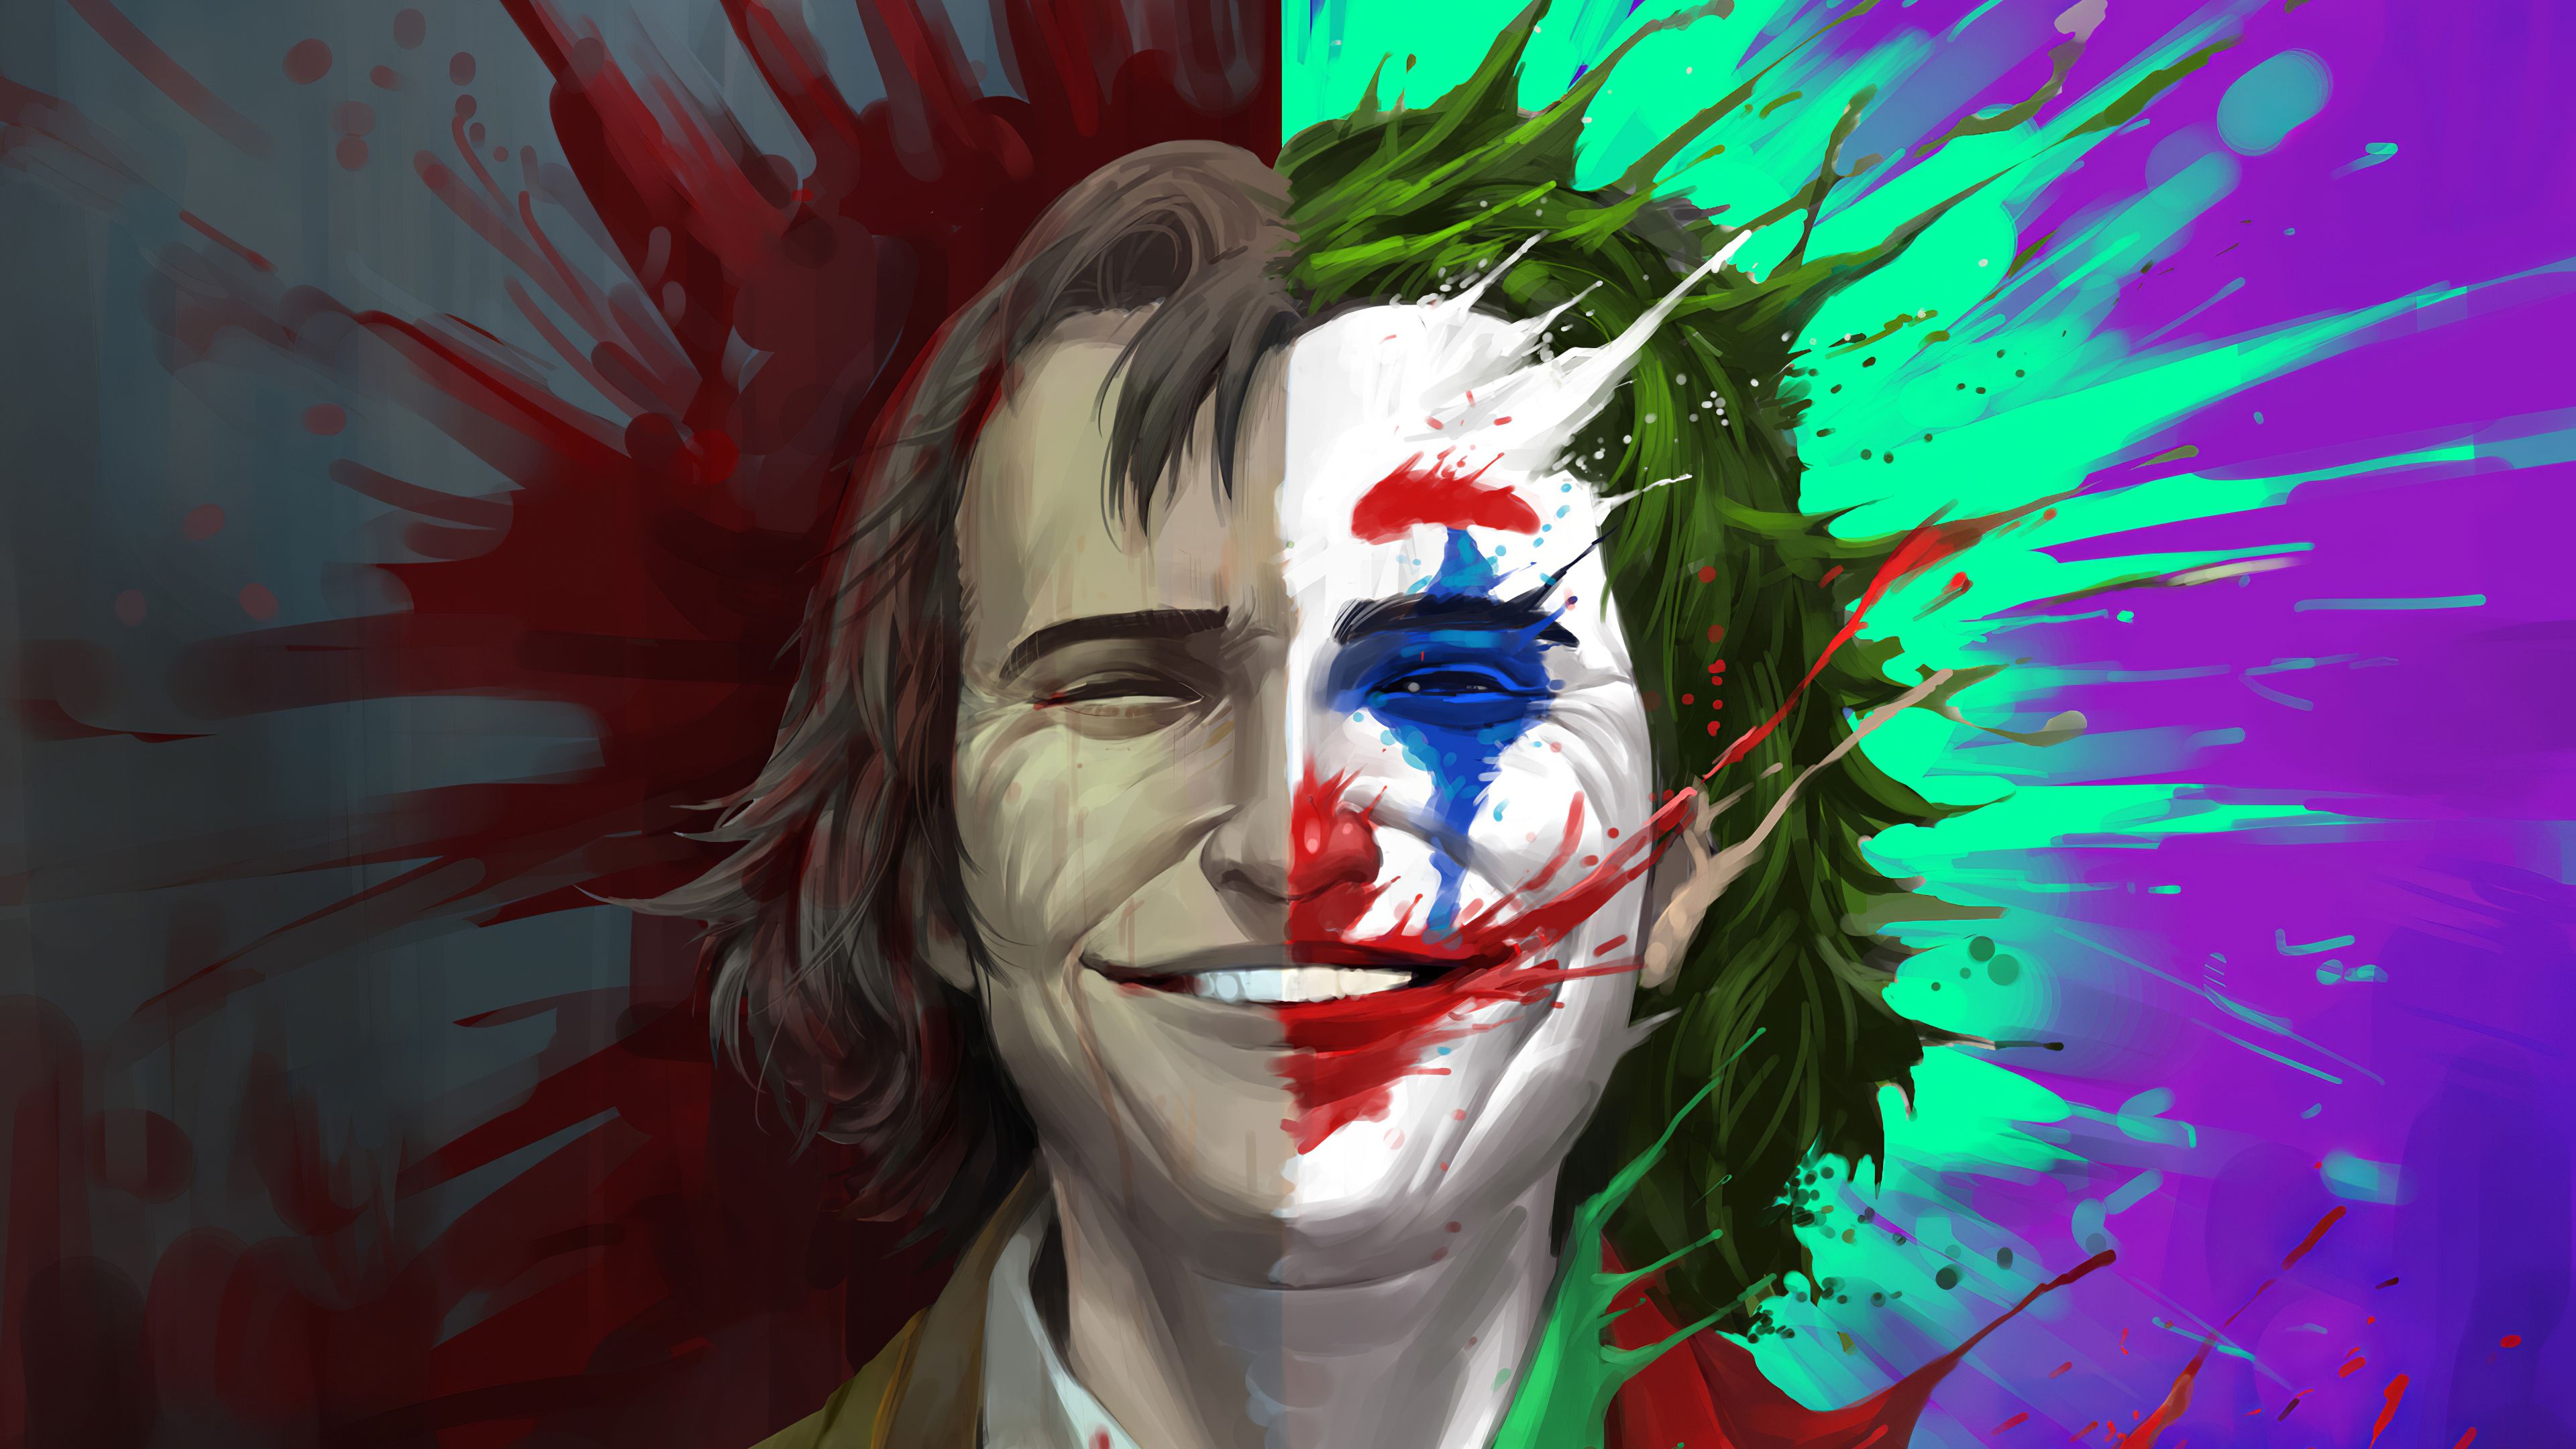 Wallpaper 4k Arthur Fleck Vs Joker 2019 movies wallpaper, 4k